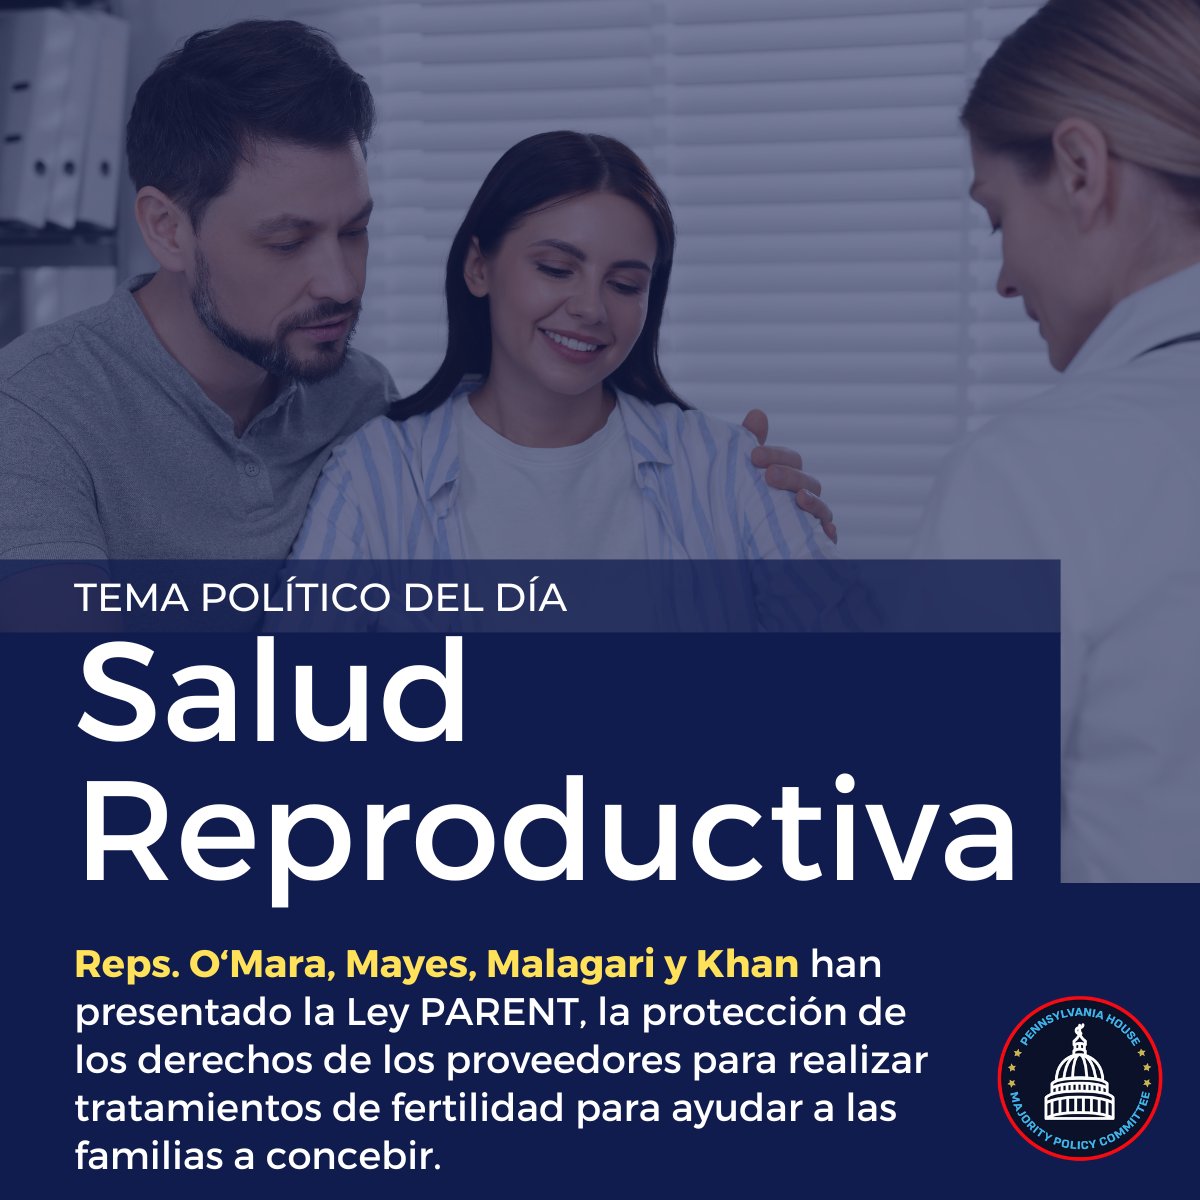 TOPIC: Reproductive Health Care // DAILY DEM POLICY POINT @RepOMara @RepMayes @RepMalagari @RepTarik